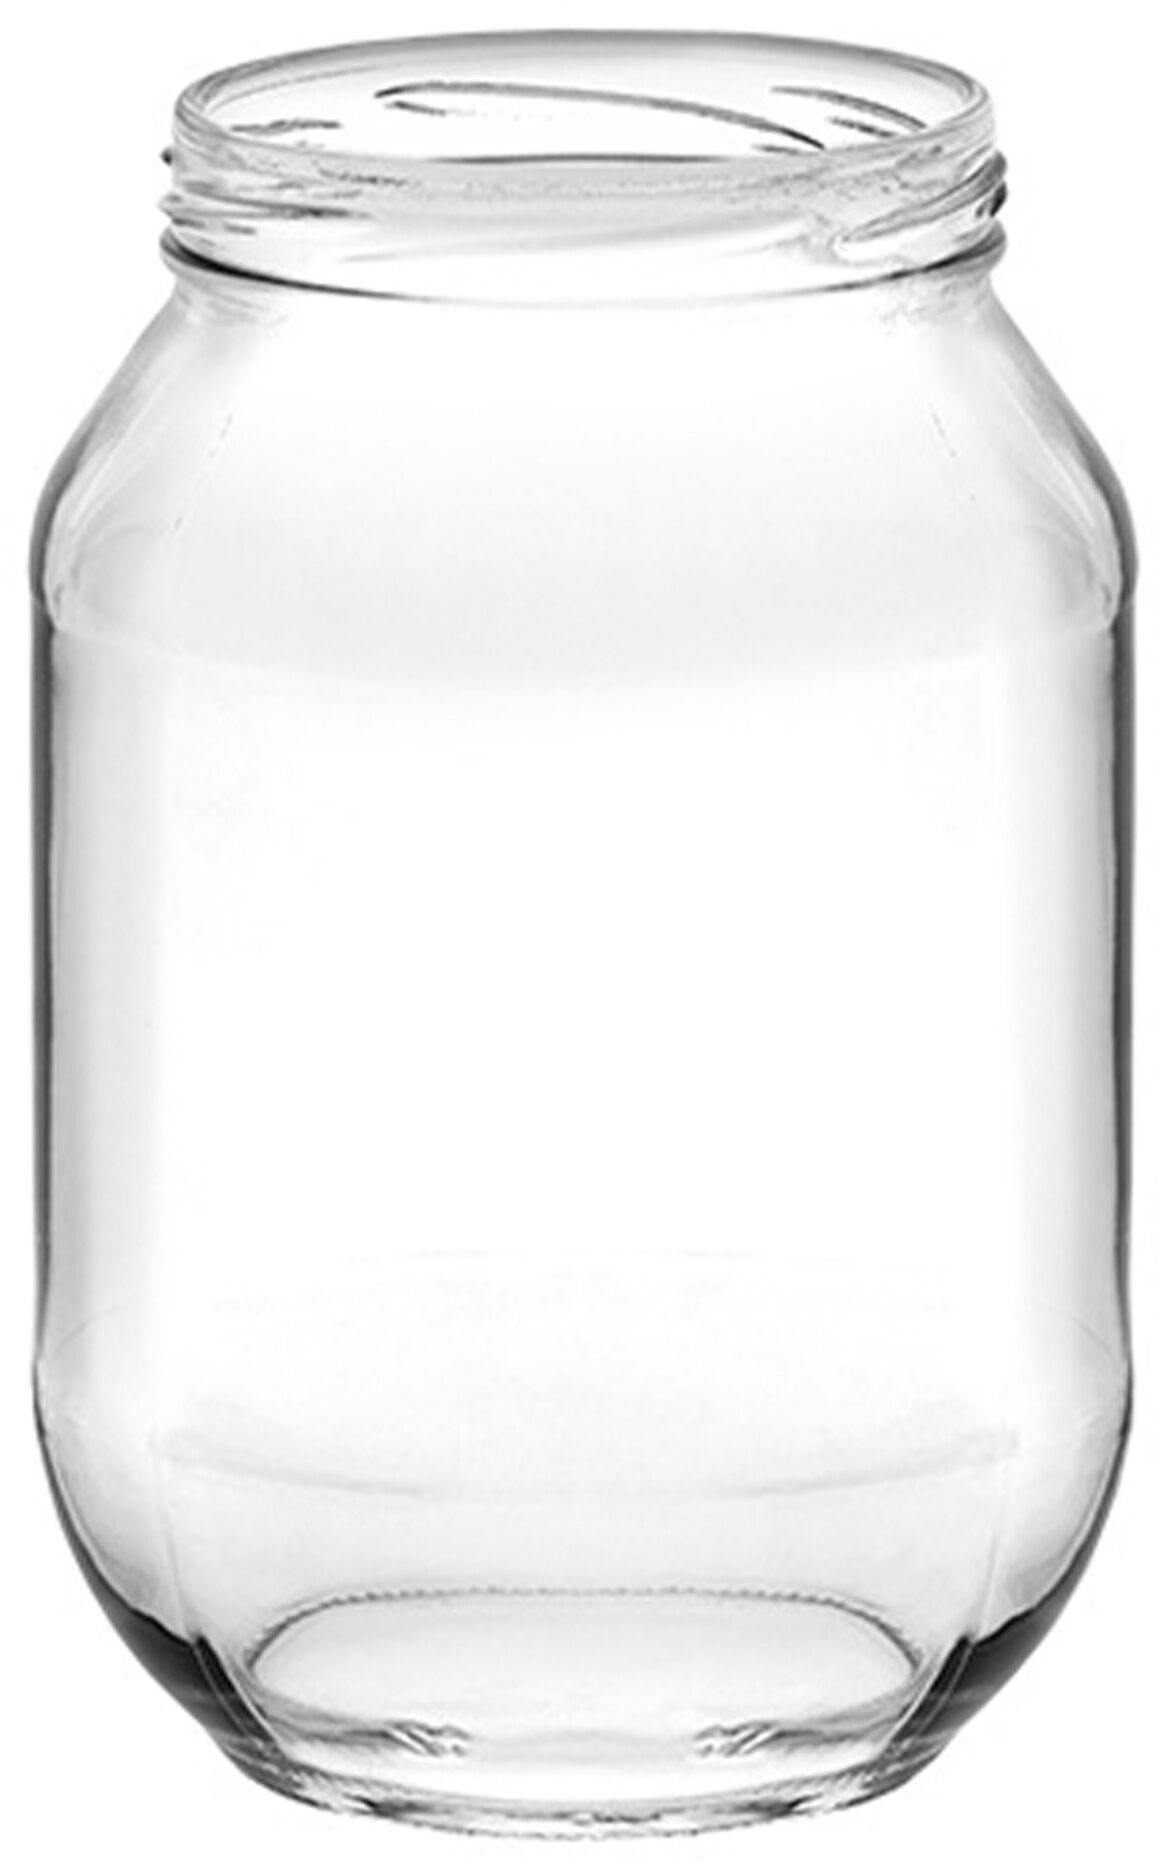 Tarro B250 250 ml (350g miel)